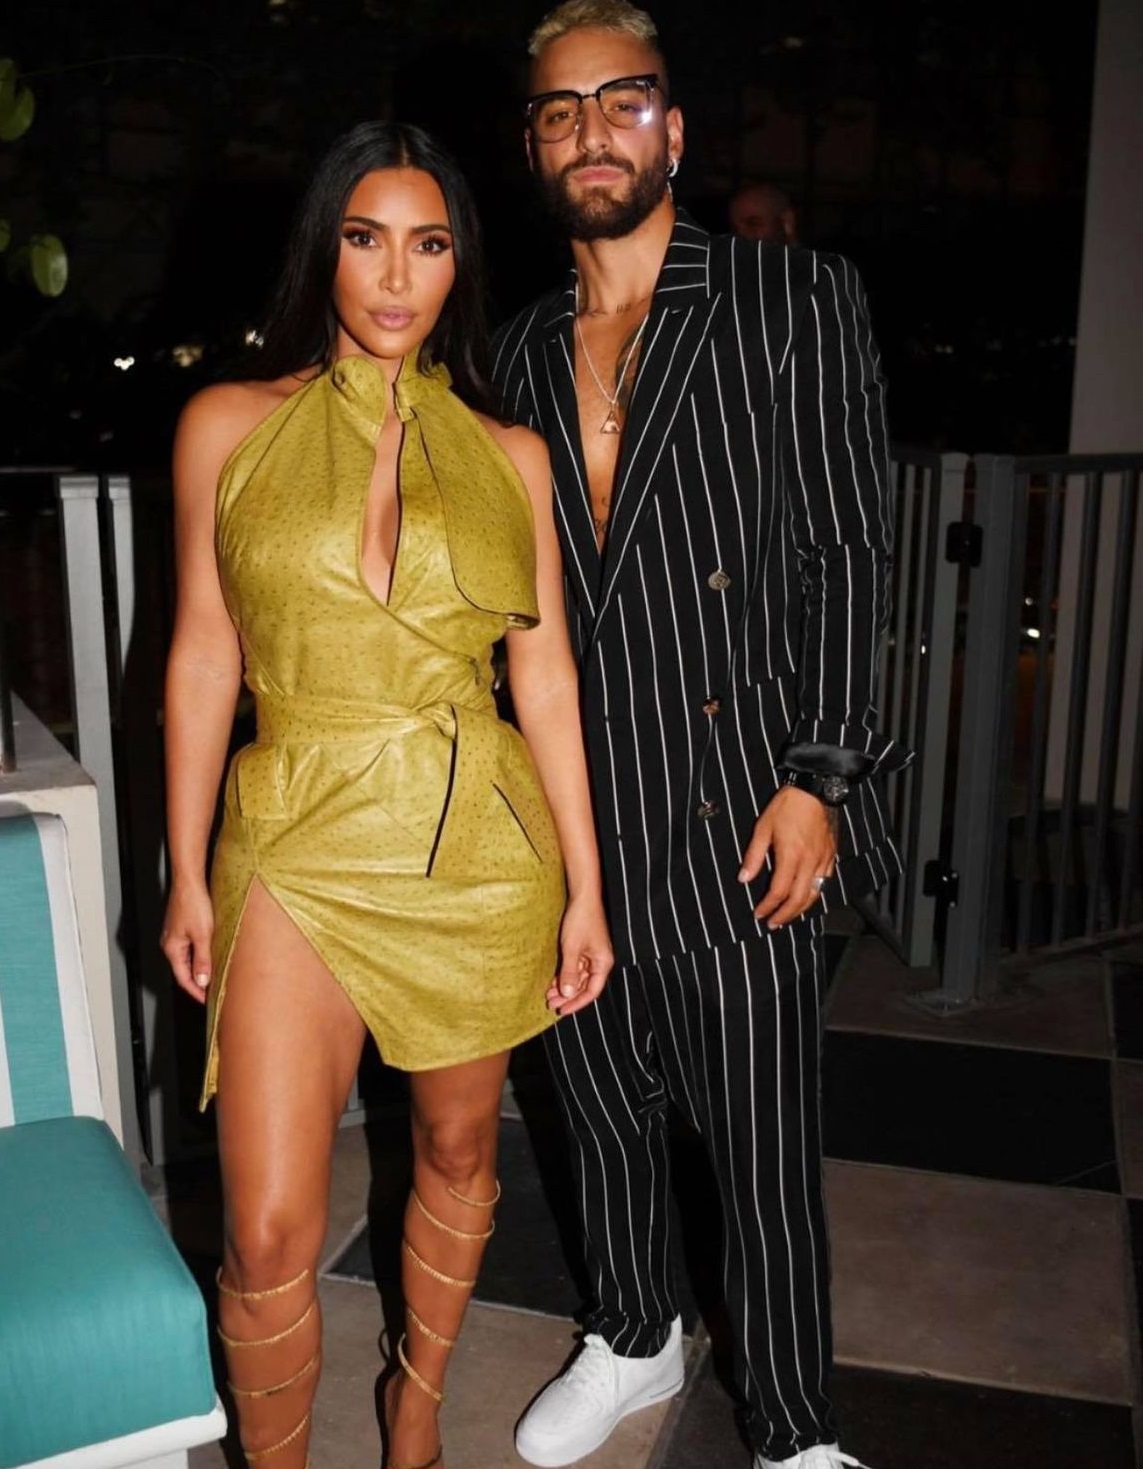 Gata cu suspansul! Care este adevărata relație dintre Kim Kardashian și Maluma? Uite ce a declarat artistul?